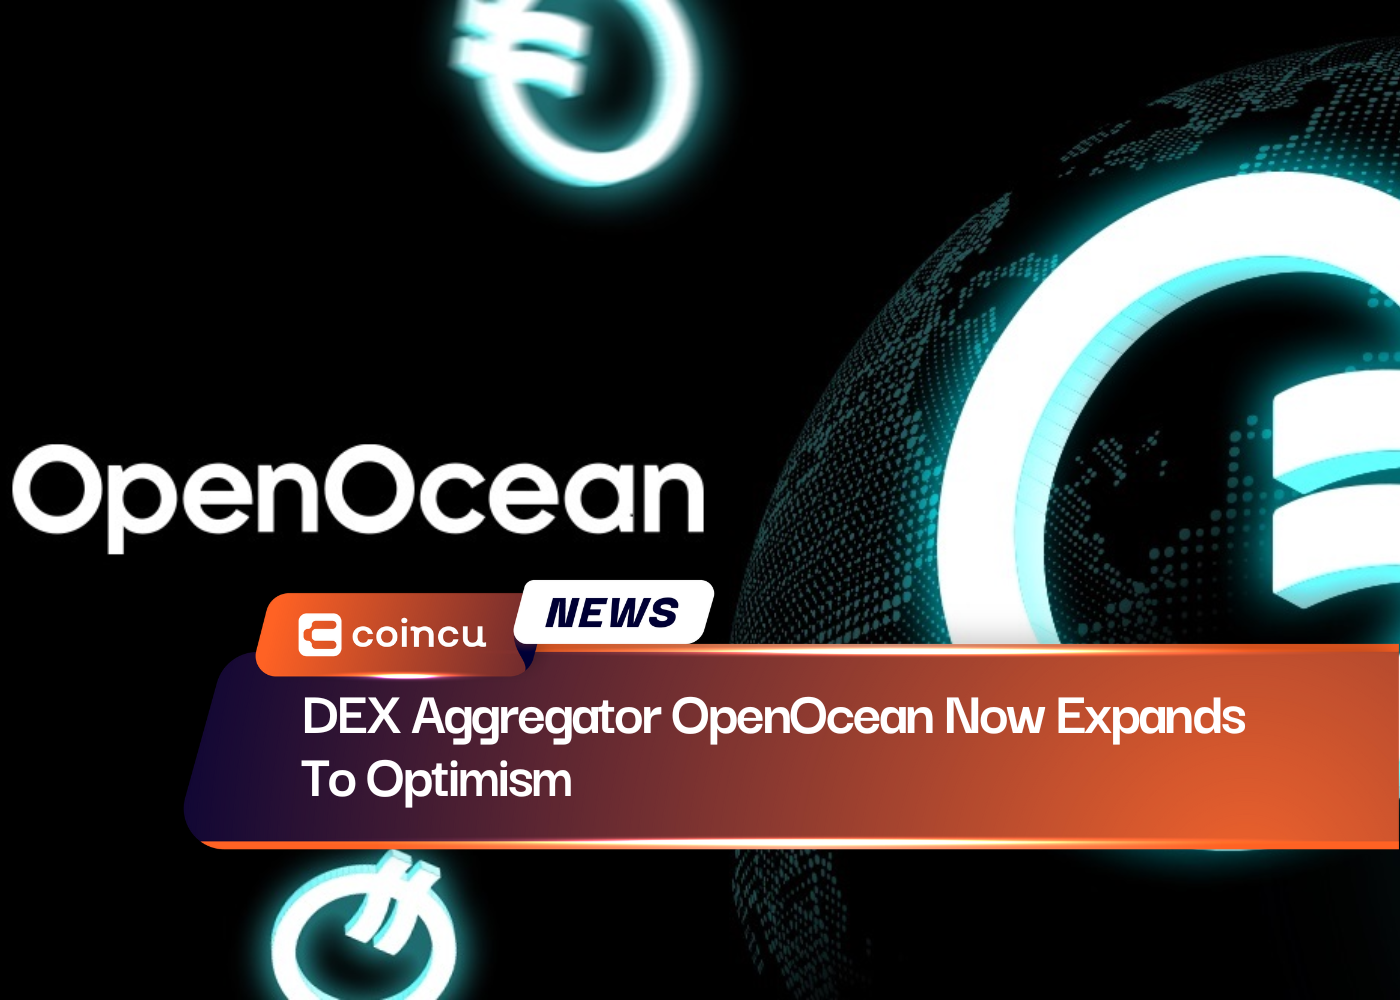 يتوسع الآن DEX Aggregator OpenOcean نحو التفاؤل